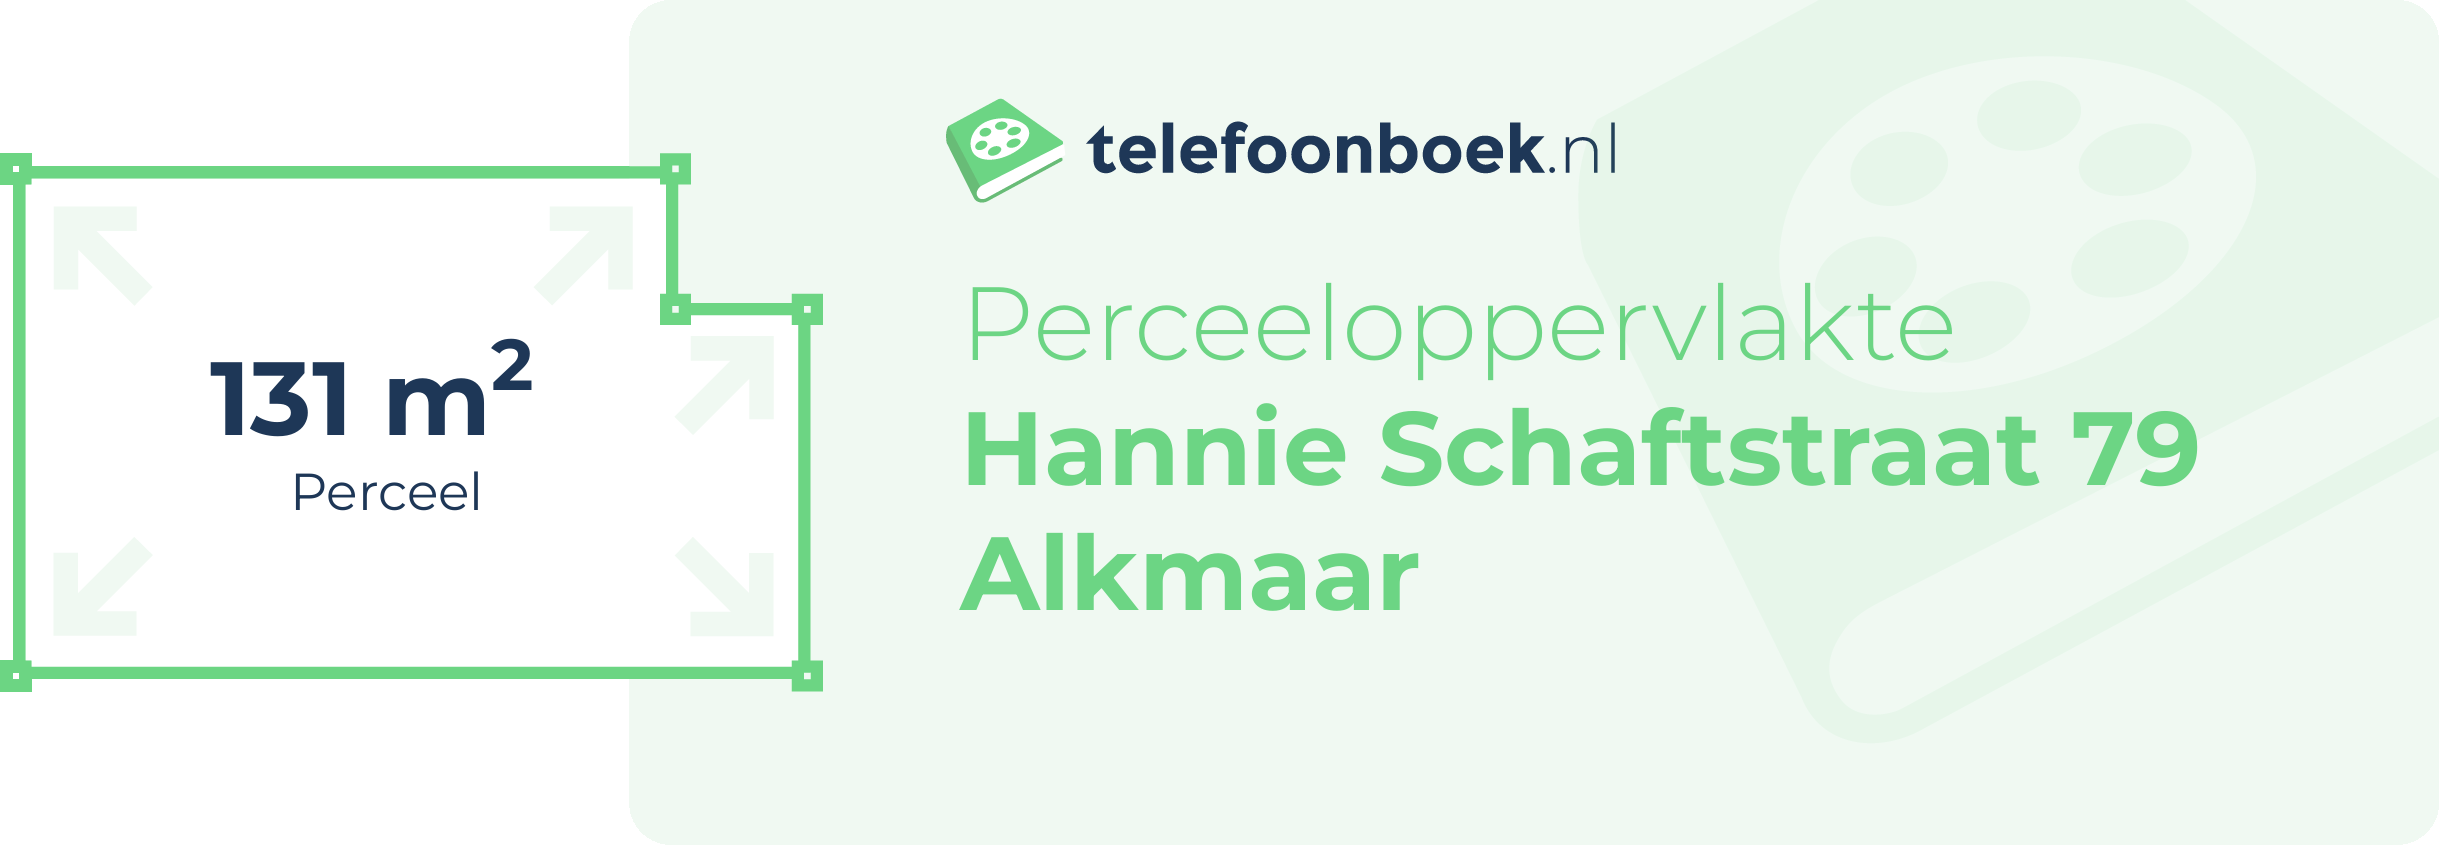 Perceeloppervlakte Hannie Schaftstraat 79 Alkmaar